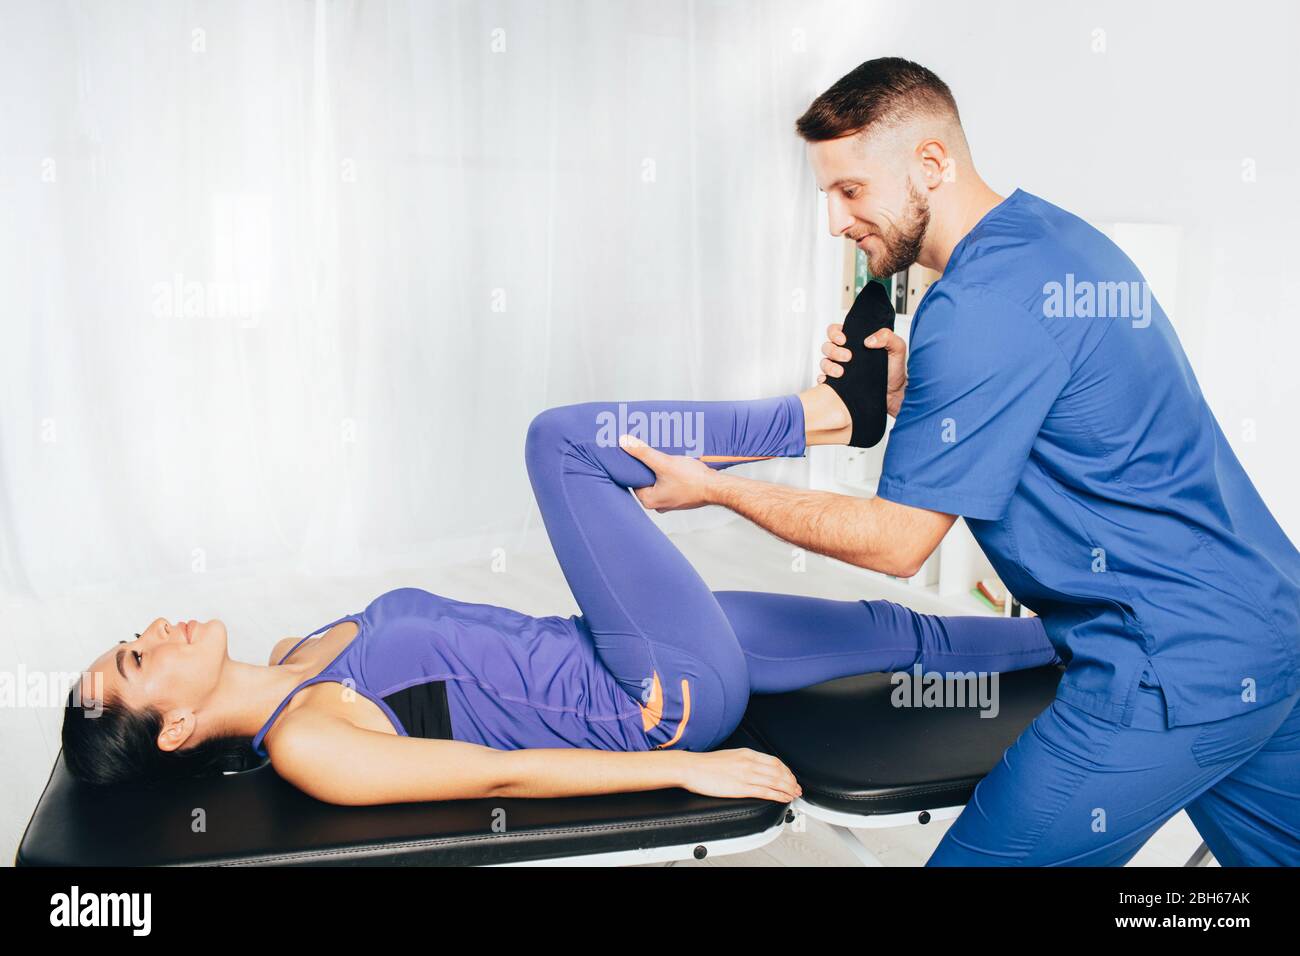 Frau behandelt ihr Gelenk mit Therapeuten. Physiotherapeut hilft seinem Patienten tun Übung für die Behandlung Gelenk Stockfoto